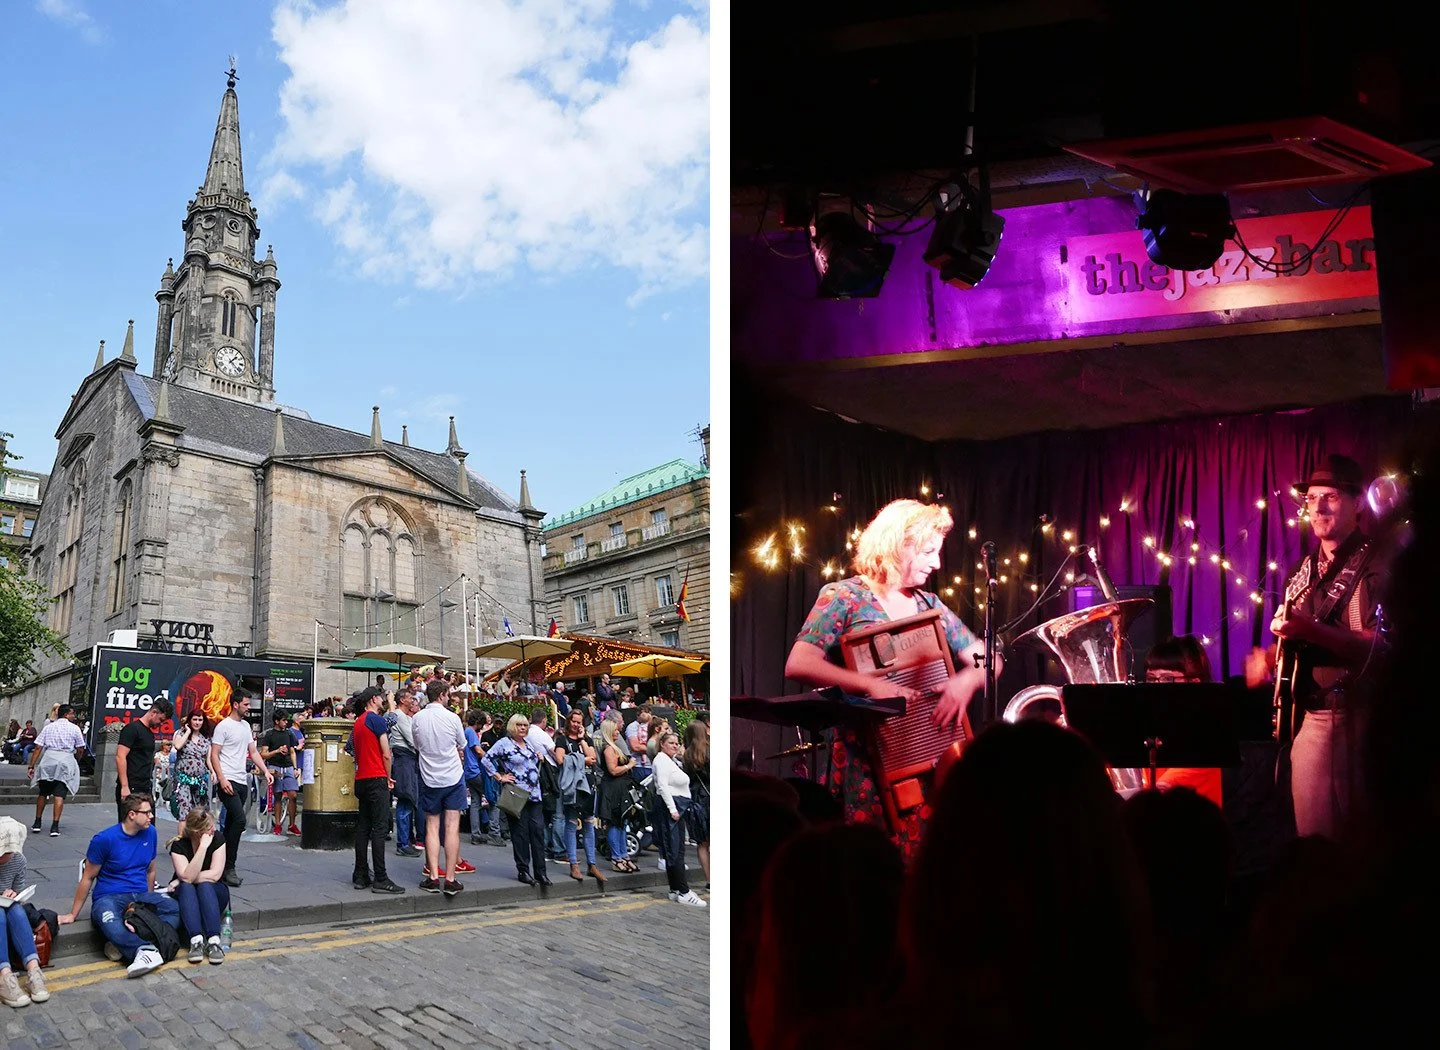 The Edinburgh Fringe festival